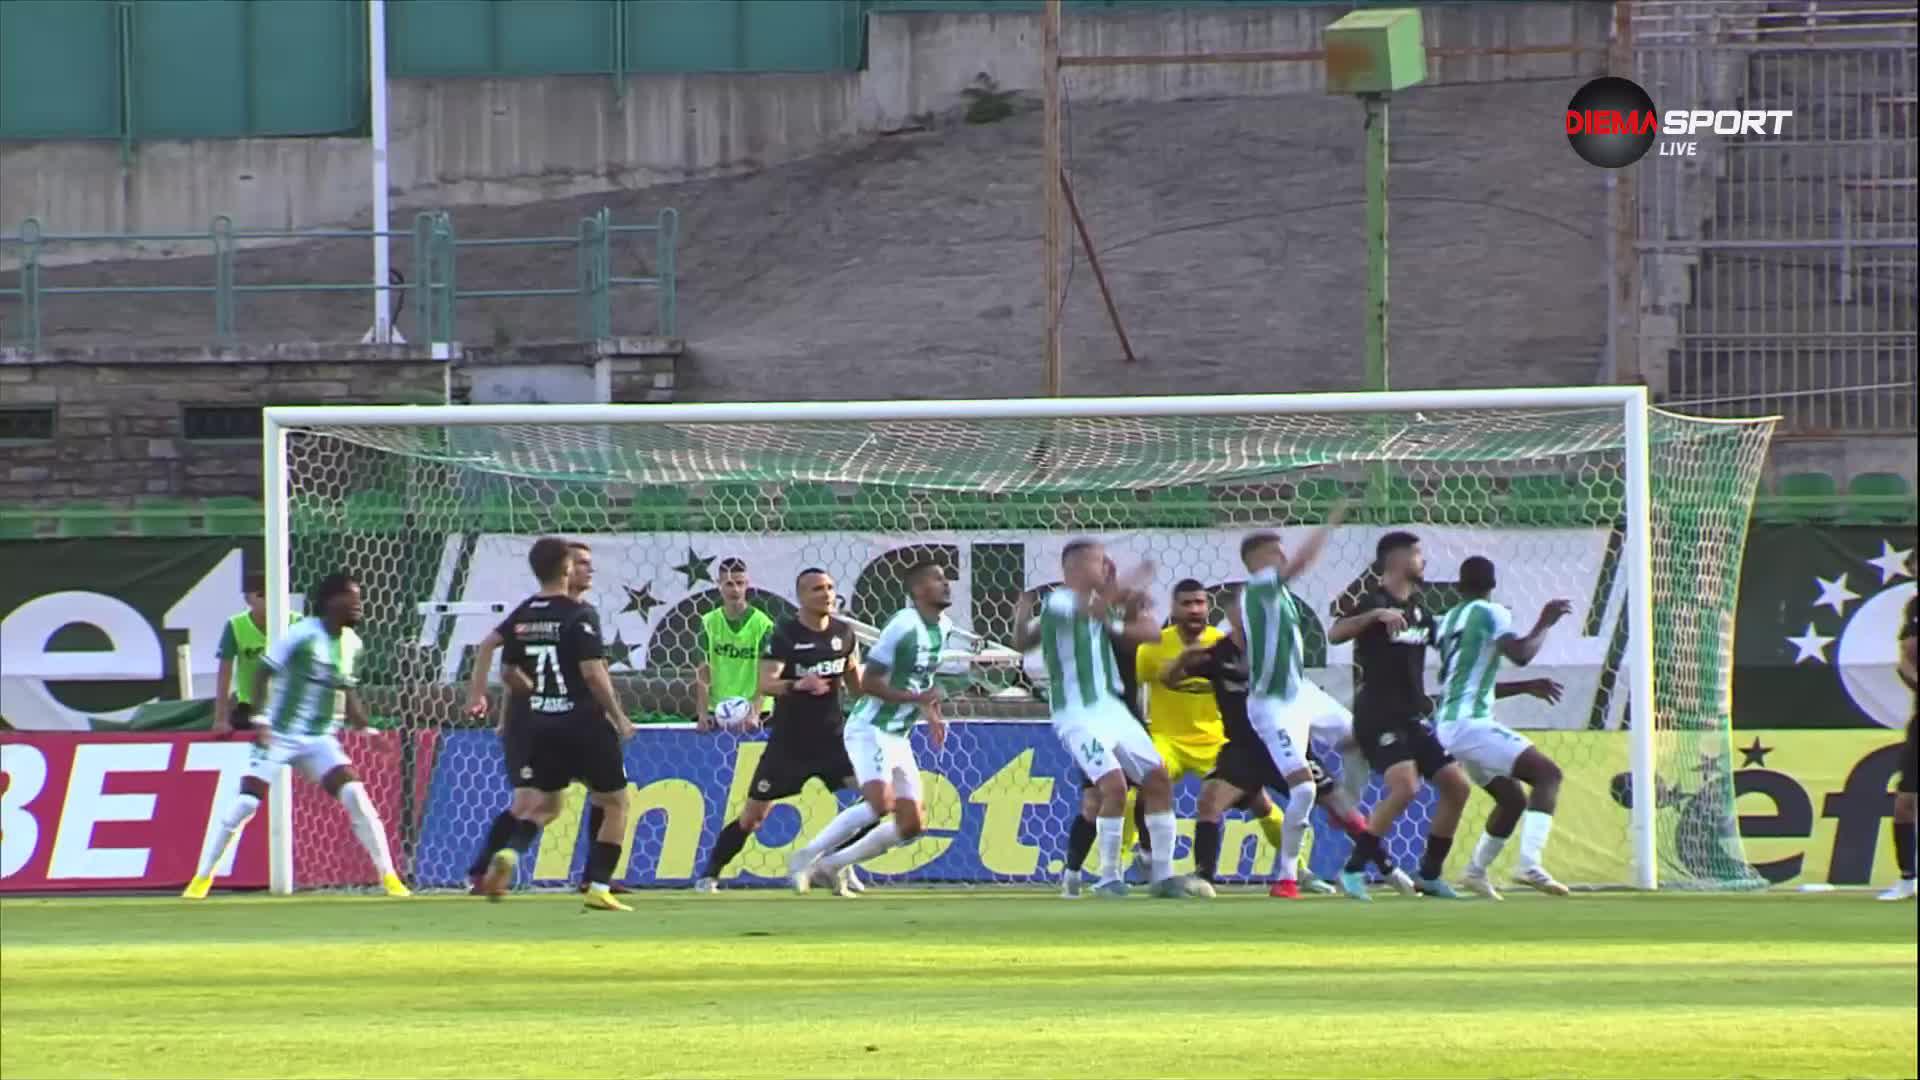 Beroe with a Goal vs. Slavia Sofia